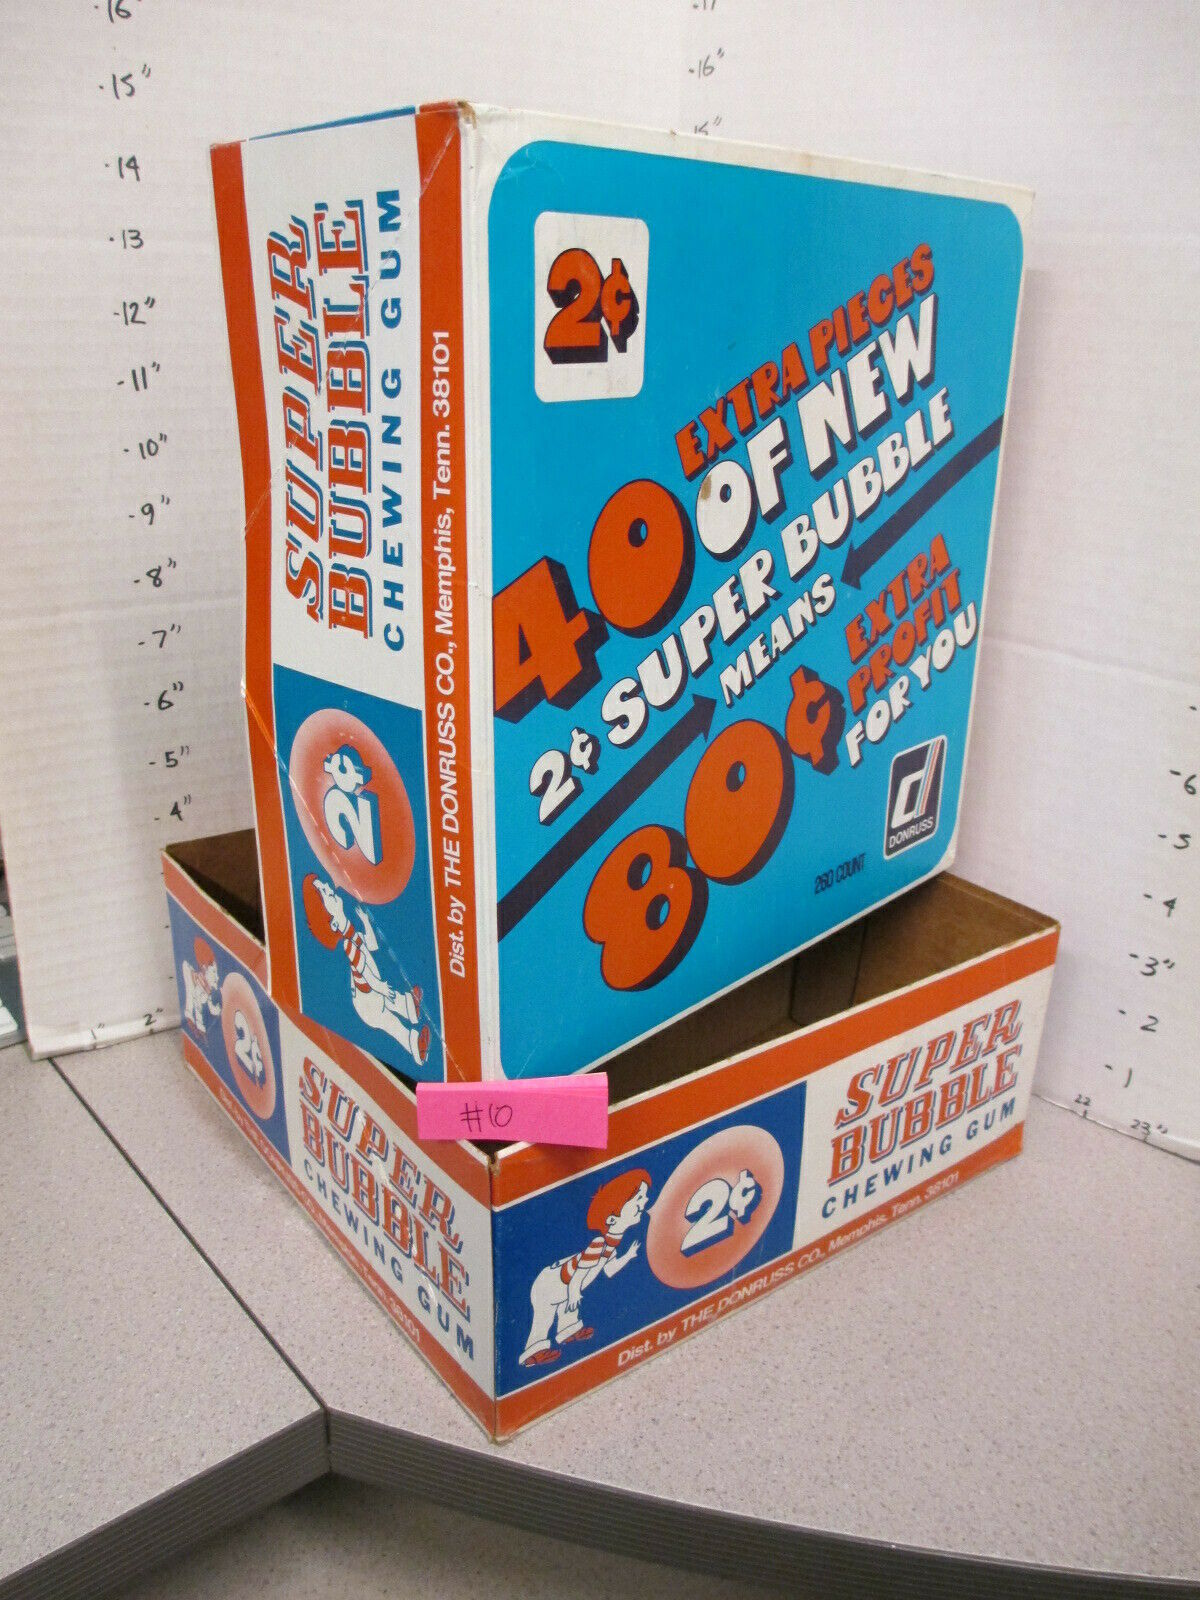 Super Bubble Chewing Bubble Gum Donruss 1960s 260 Count 2 Cent Candy Box #10